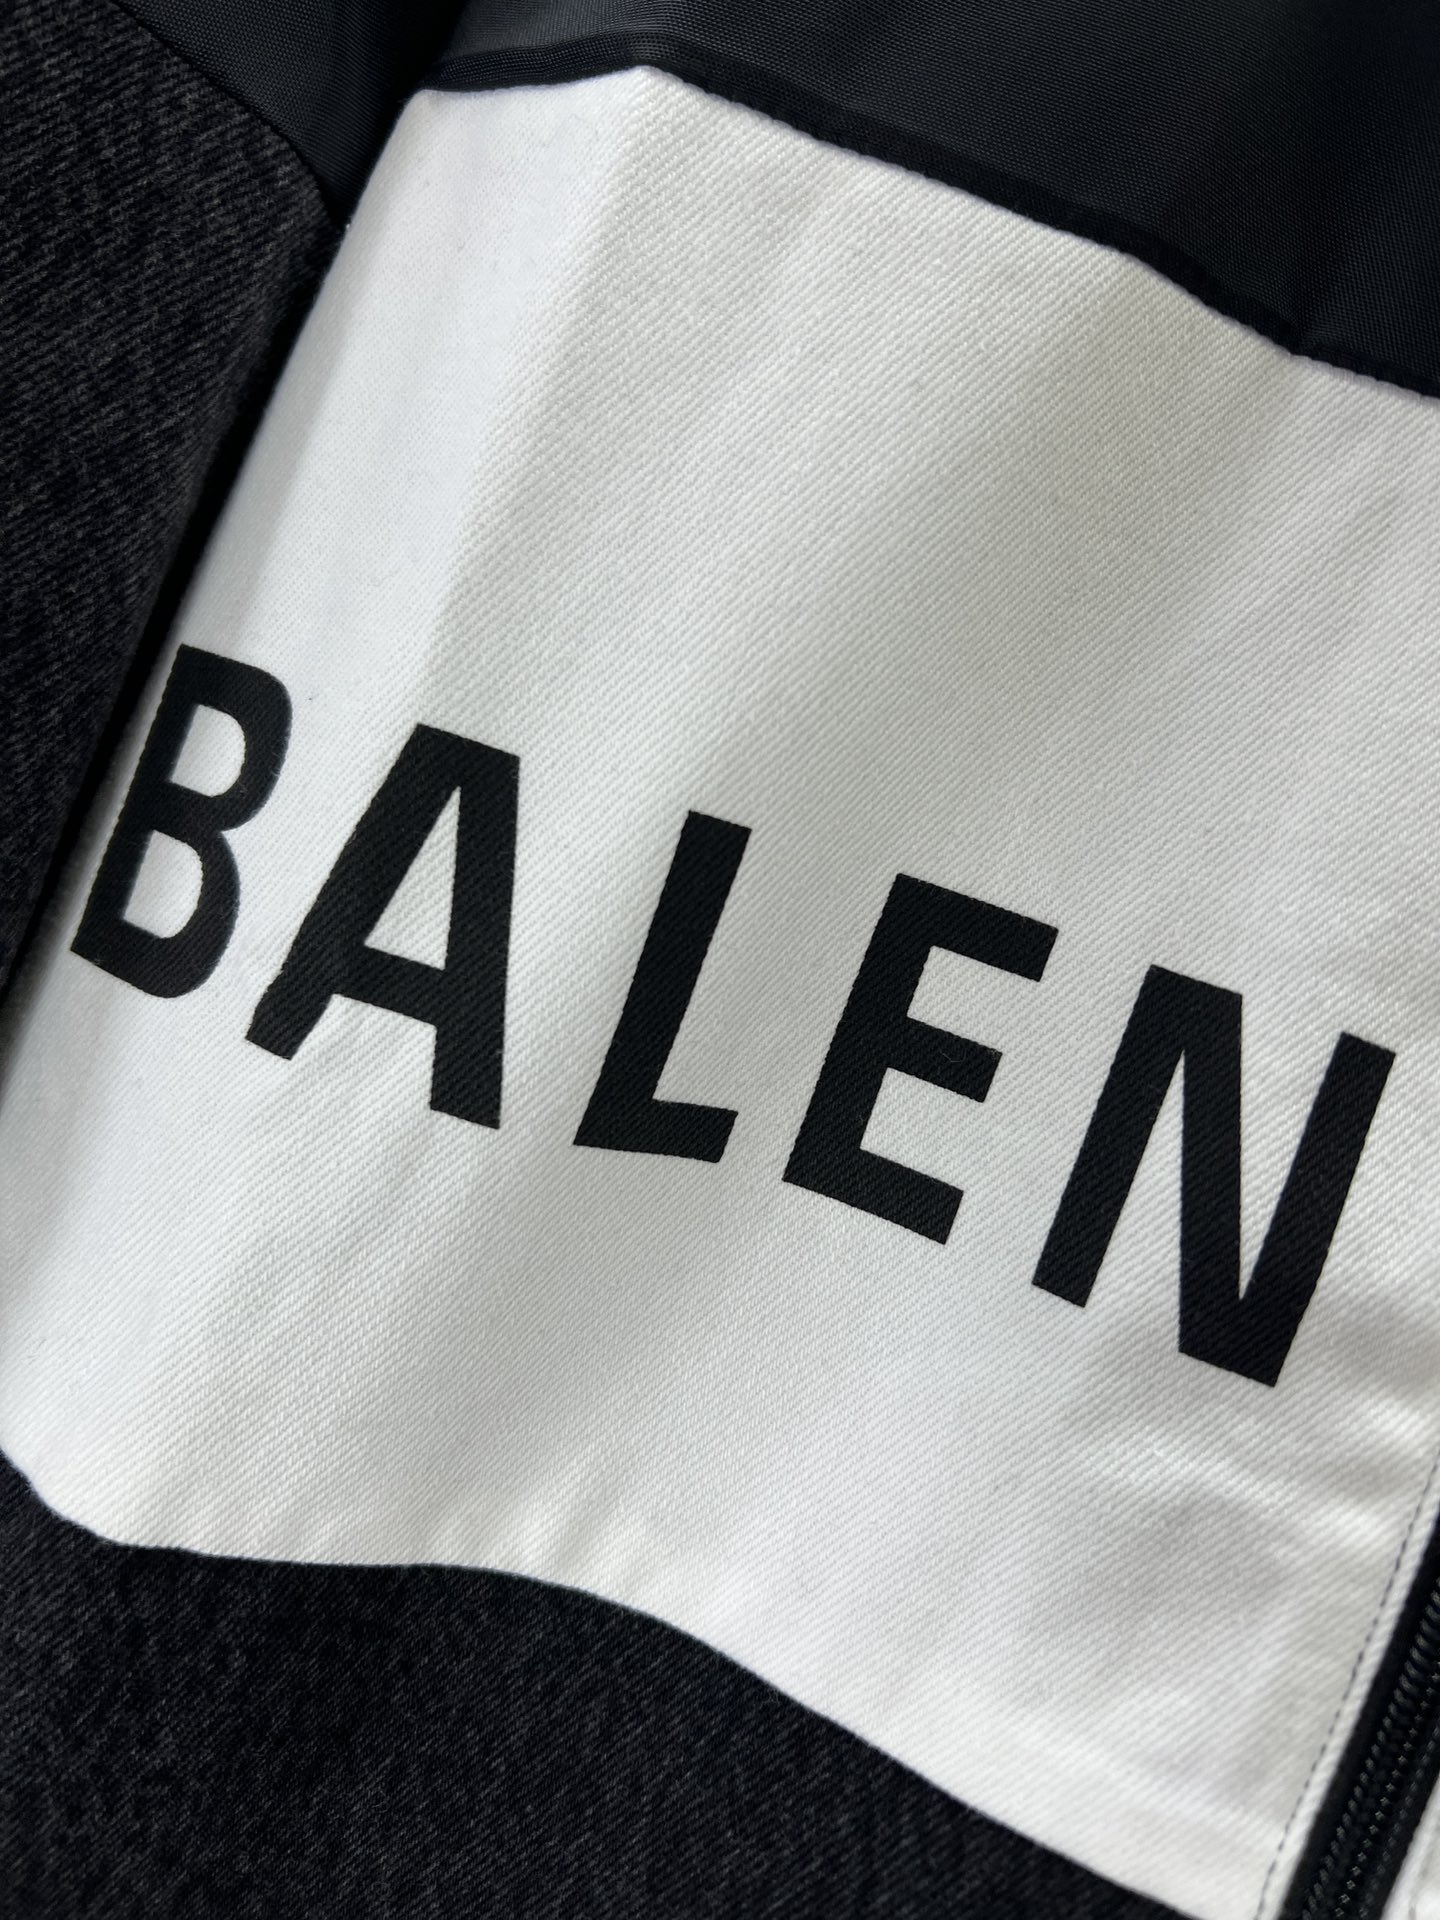 Balenciaga巴黎世家23早春新款走秀款黑白拼接冲锋衣外套轻奢主义男女日常通勤穿搭必备单品定制防风